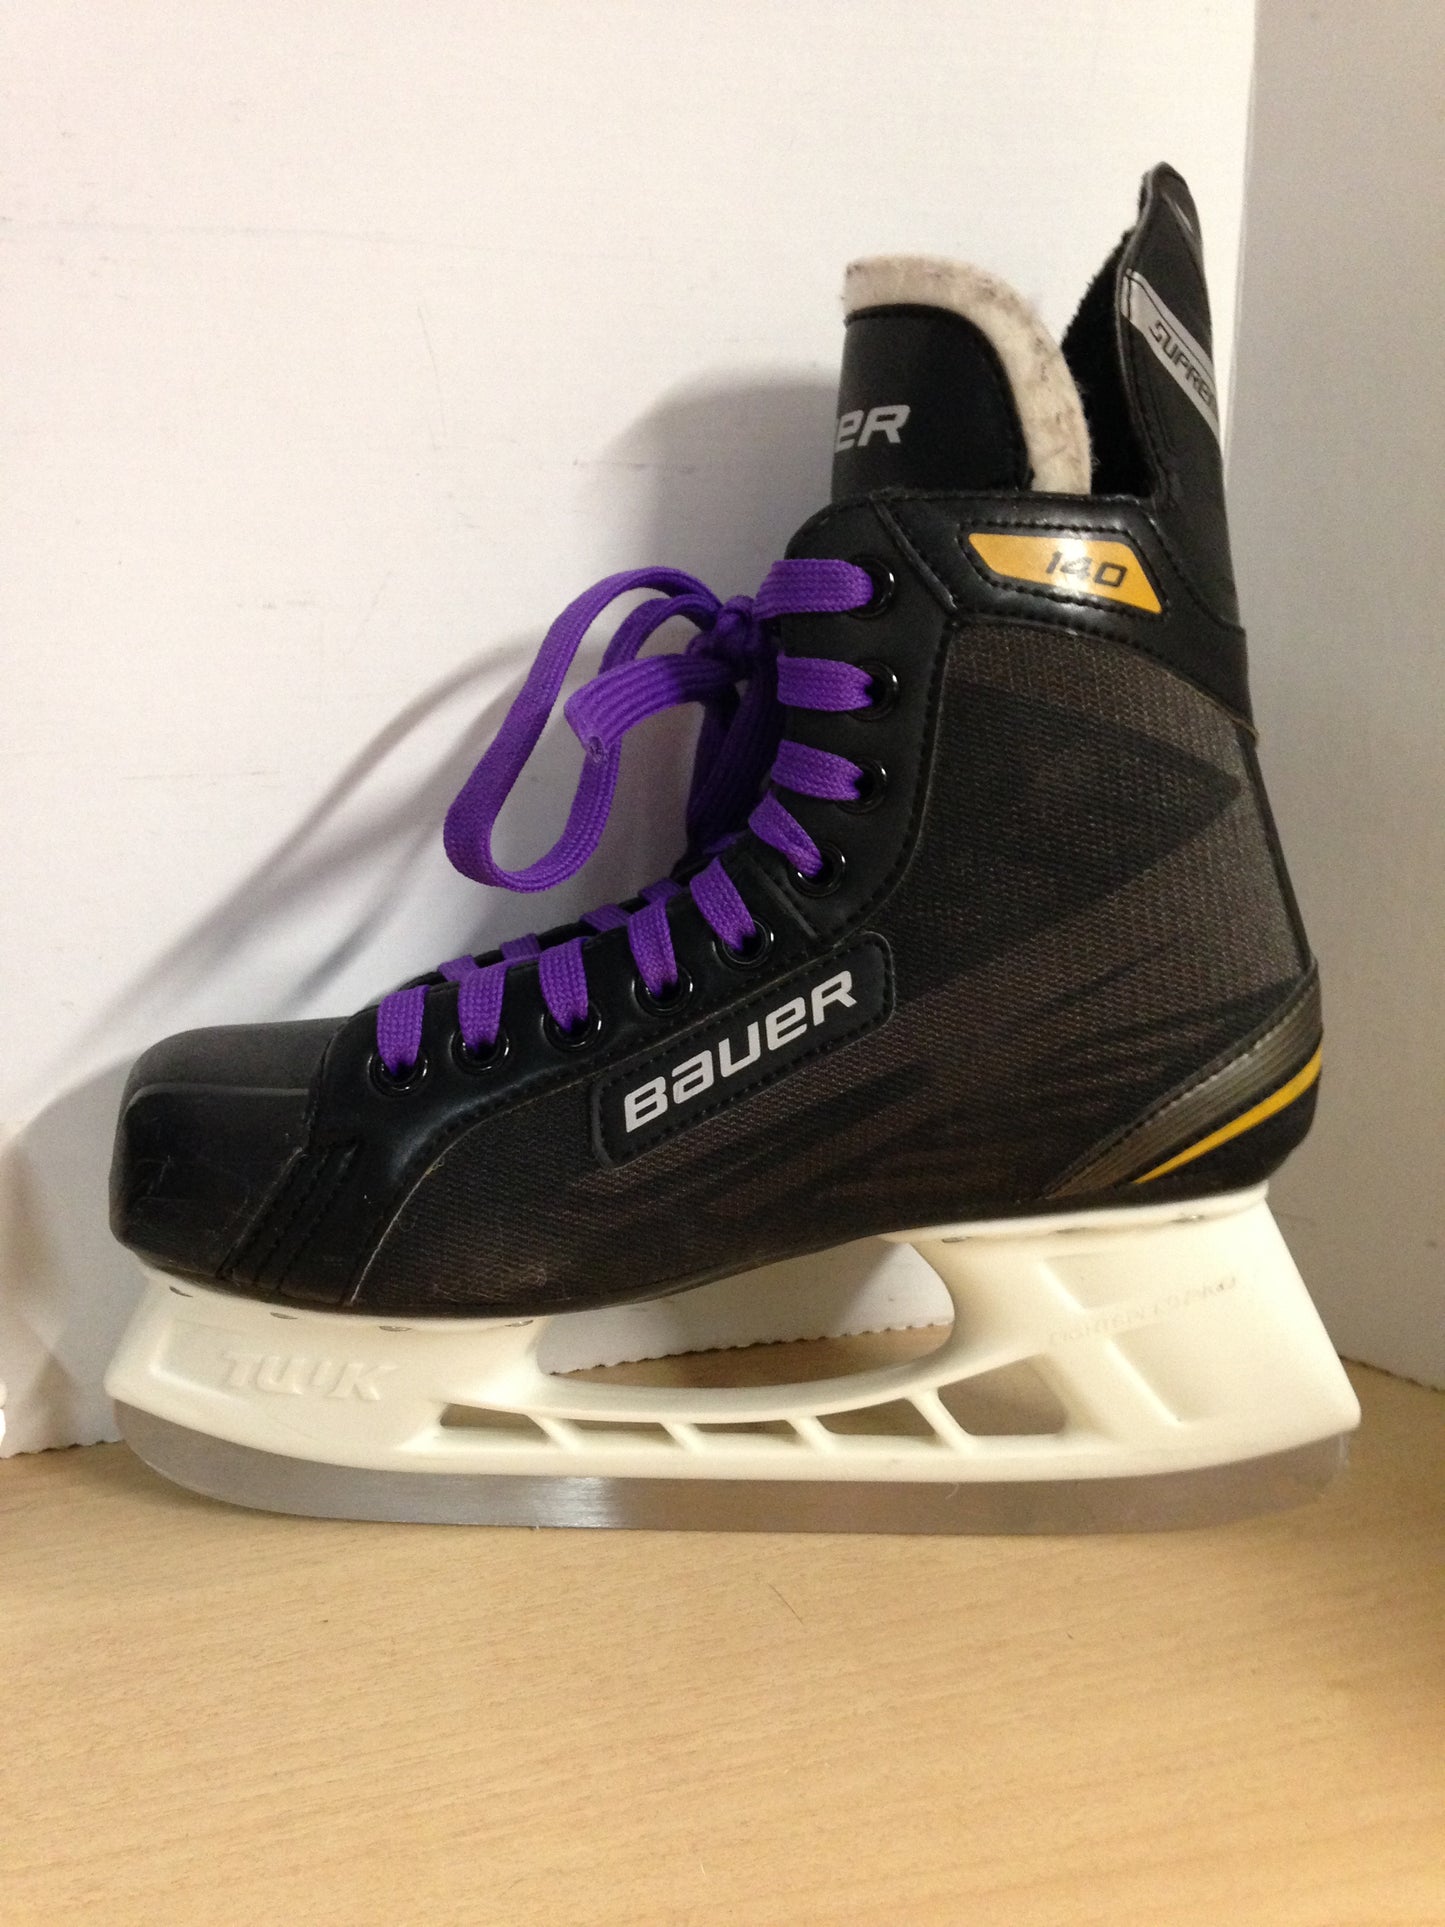 Hockey Skates Men's Size 7.5 Shoe 6 Skate Size Bauer Supreme 140 Excellent